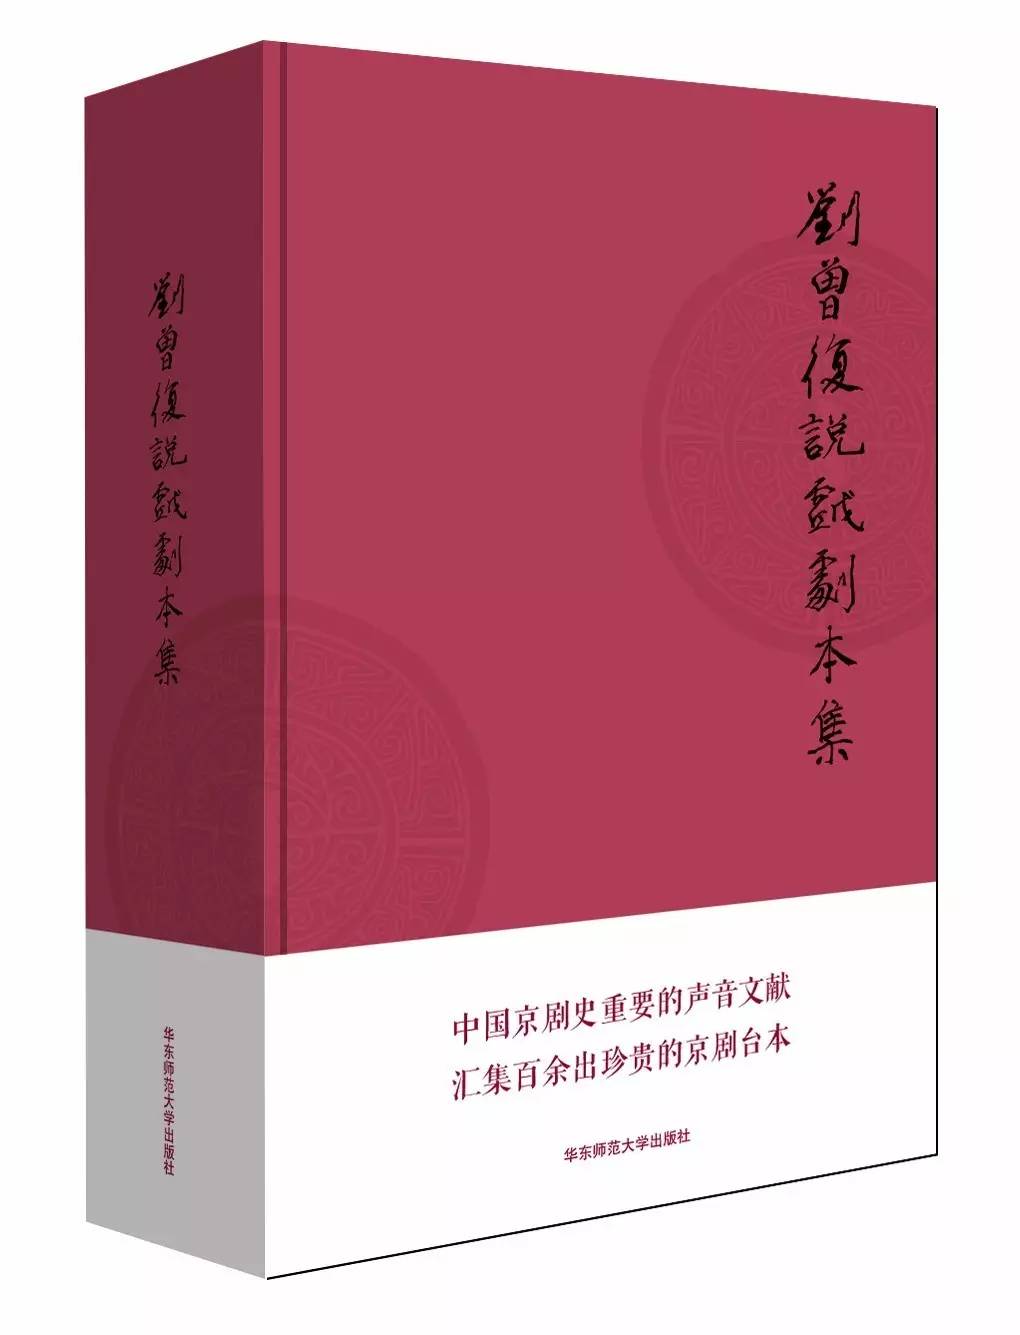 華東師範大學出版社